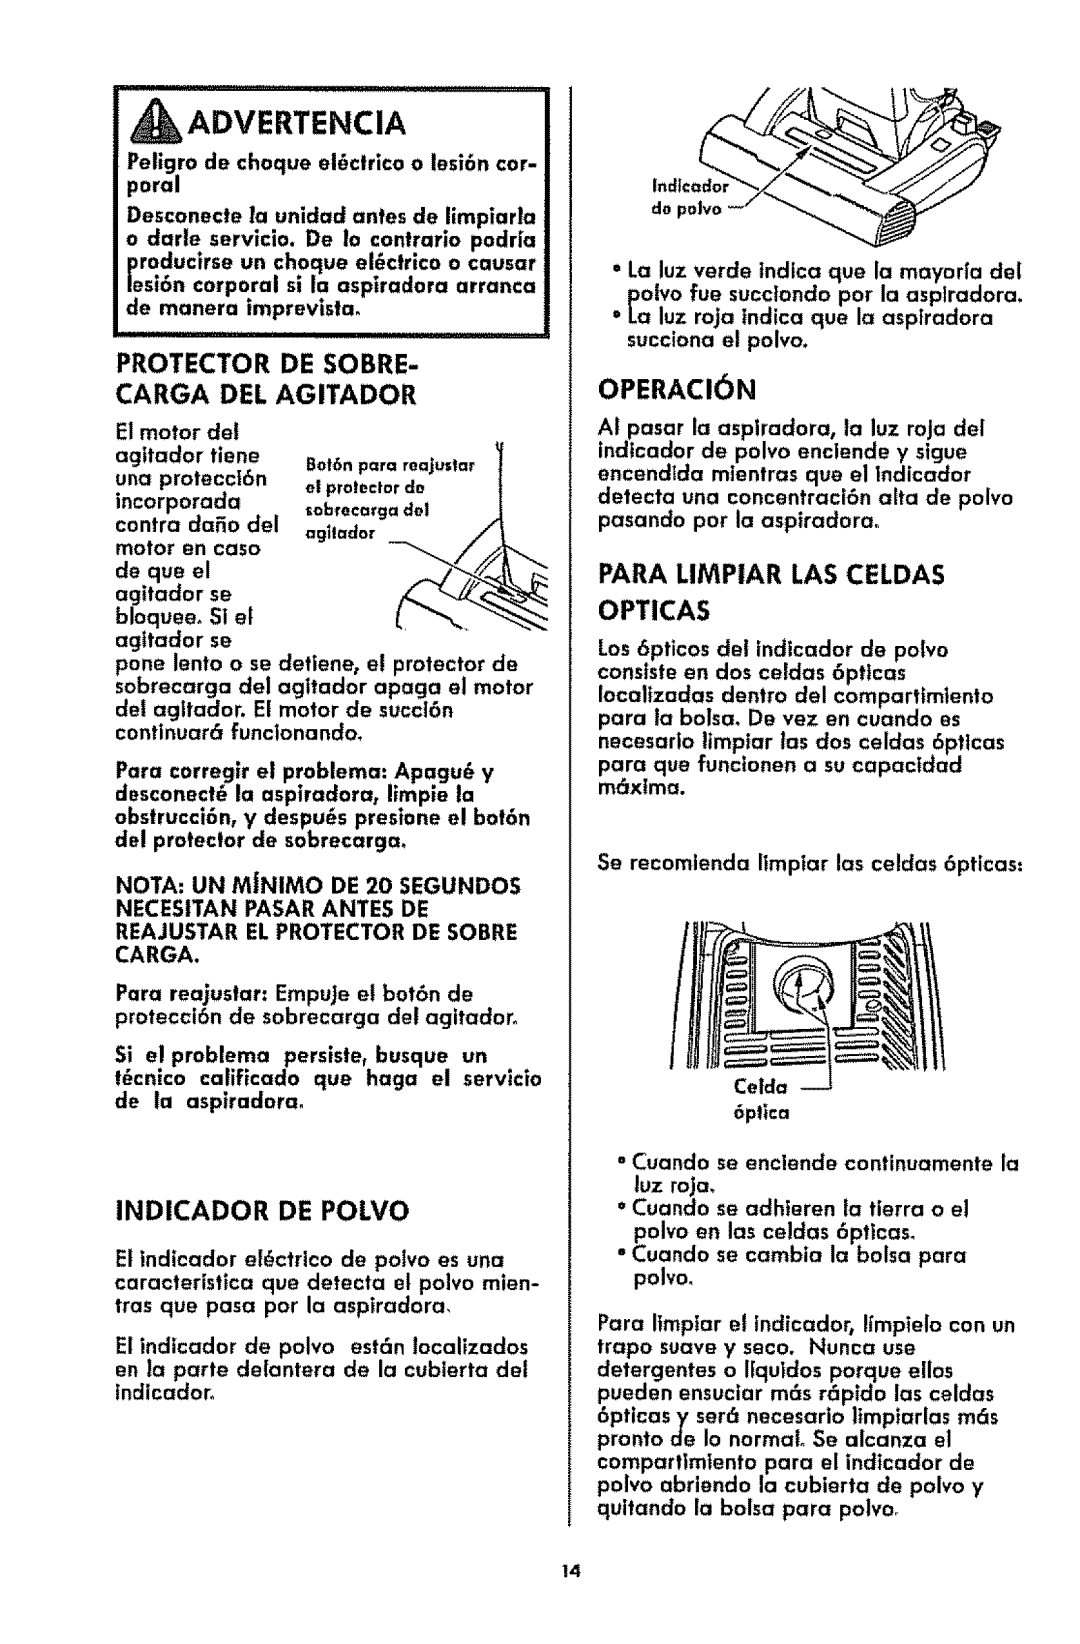 Kenmore 116.3181 manual _Advertencia, Protector De Sobre Carga Del Agitador, Indicador De Polvo, OPERACIbN 